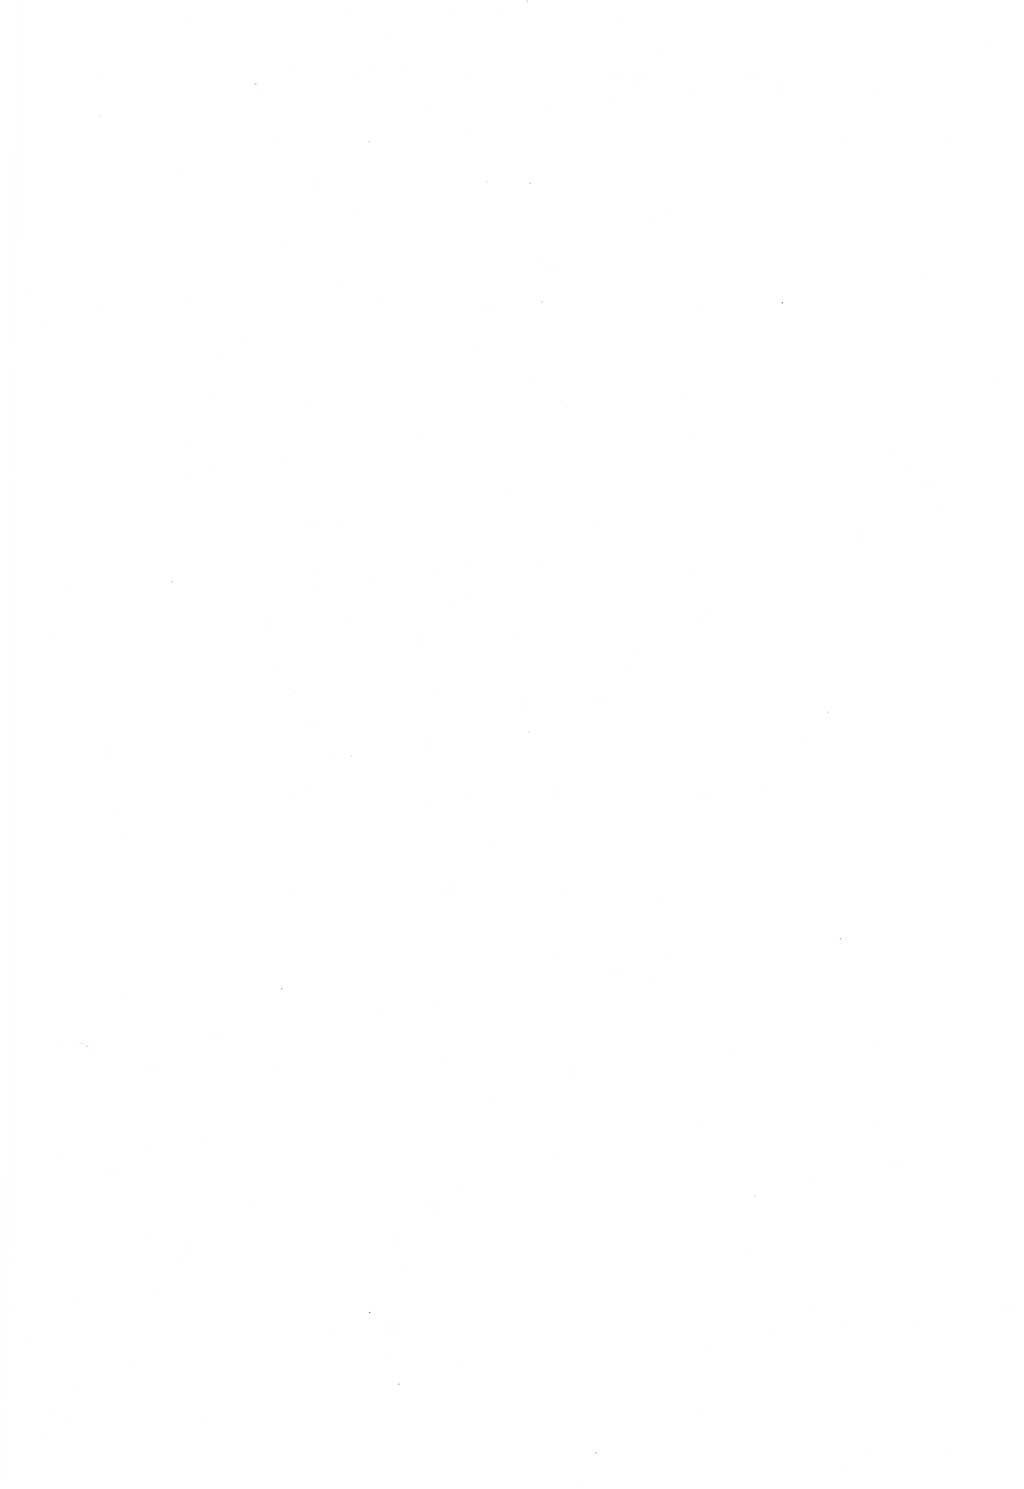 Lenin und die Gesamtrussische Tscheka, Dokumentensammlung, Ministerium für Staatssicherheit (MfS) [Deutsche Demokratische Republik (DDR)], Juristische Hochschule (JHS) Potsdam 1977, Seite 1 (Tscheka Dok. MfS DDR 1977, S. 1)